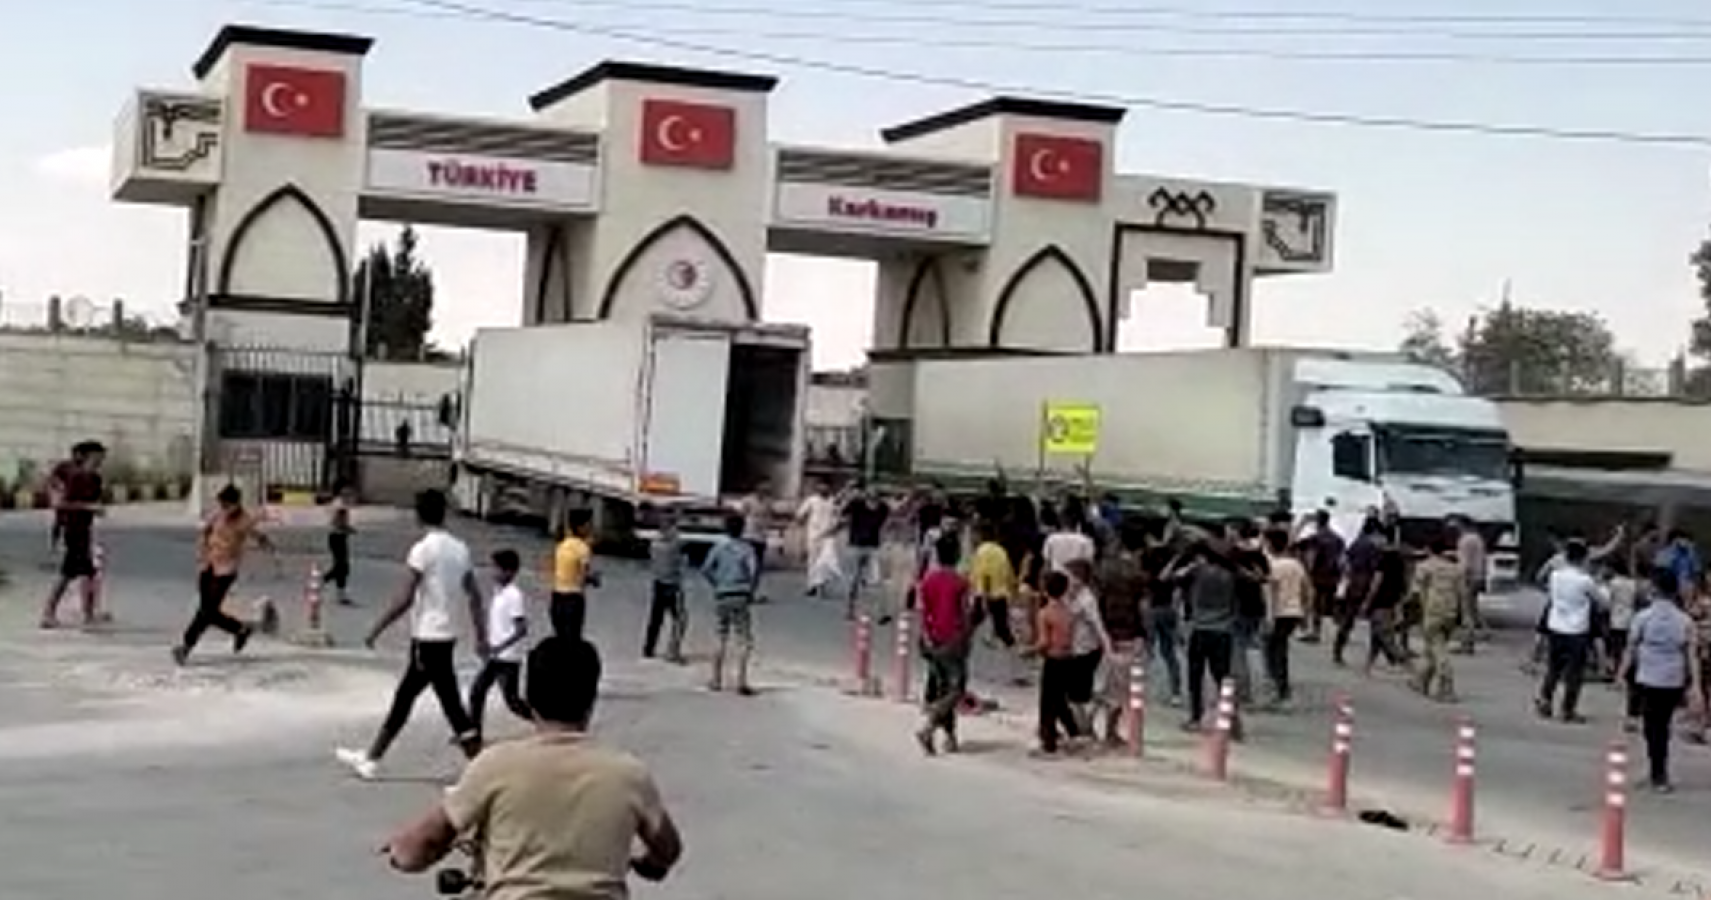 Akçakale’nin sınır komşusu Tel Abyad’da Türkiye karşıtı protesto (-EK);